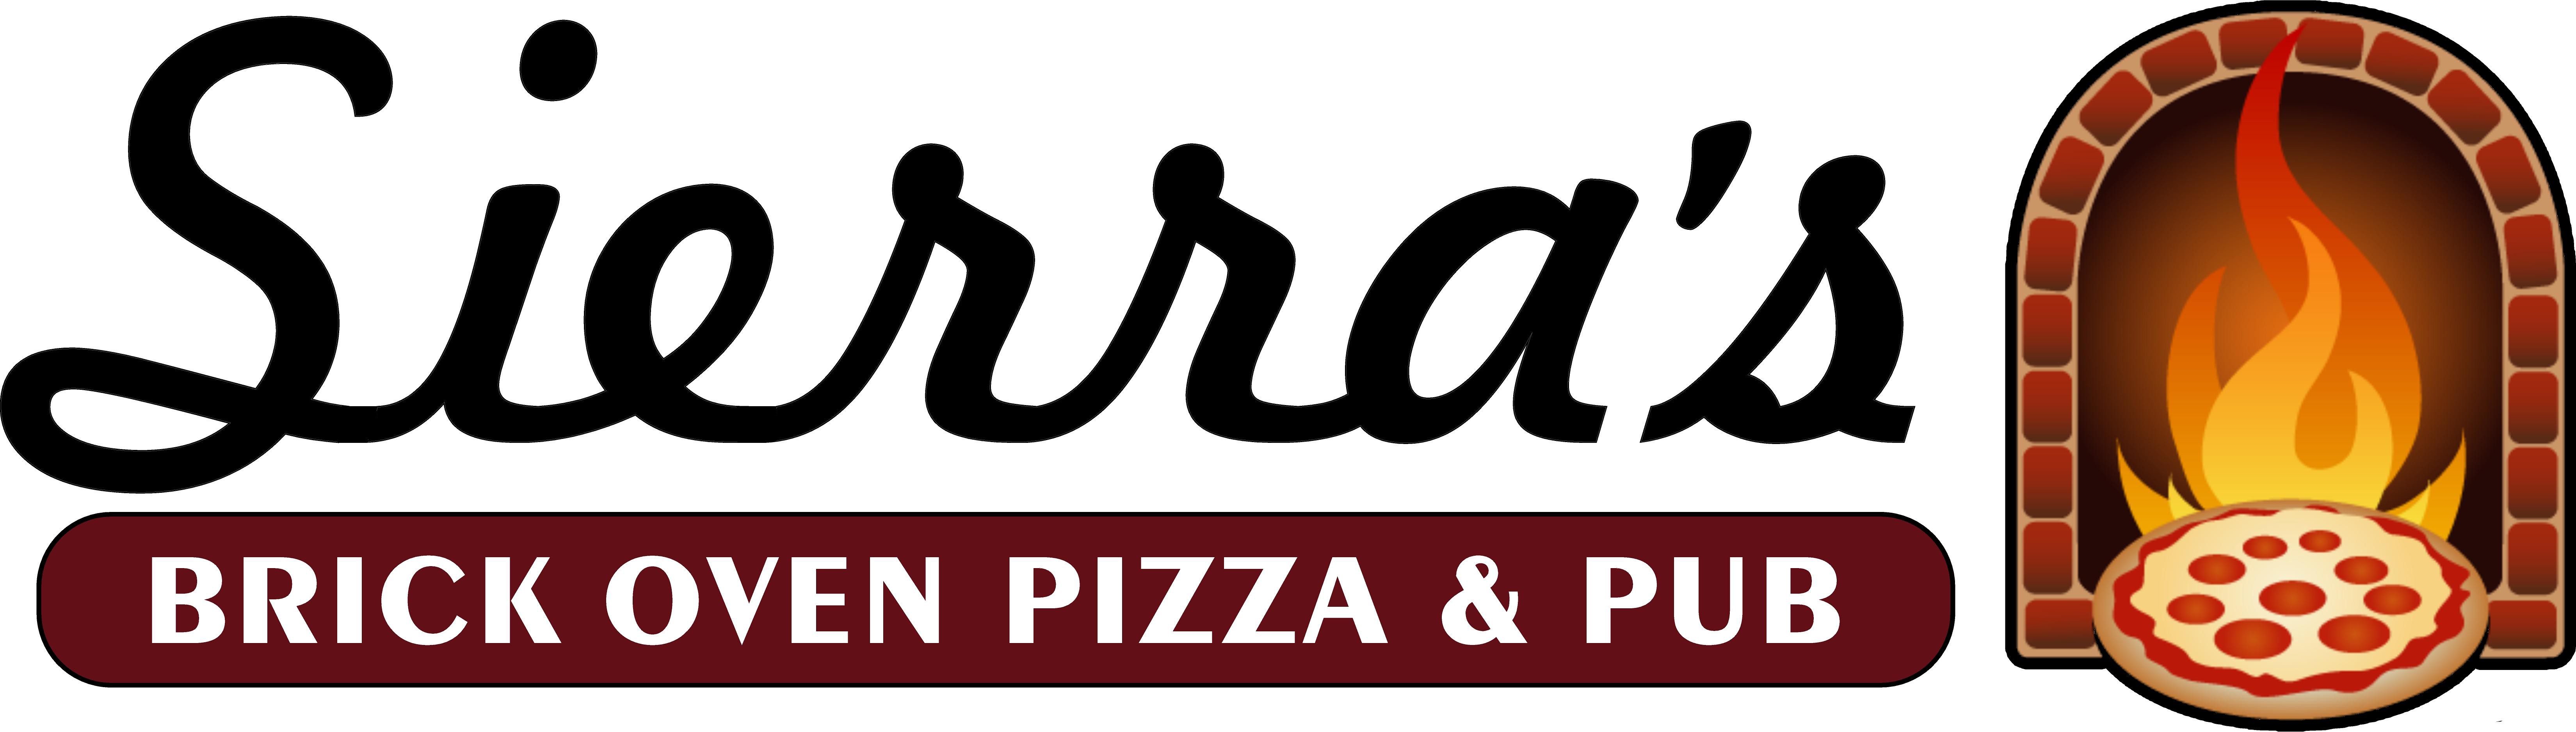 Sierra's Brick Oven Pizza & Pub